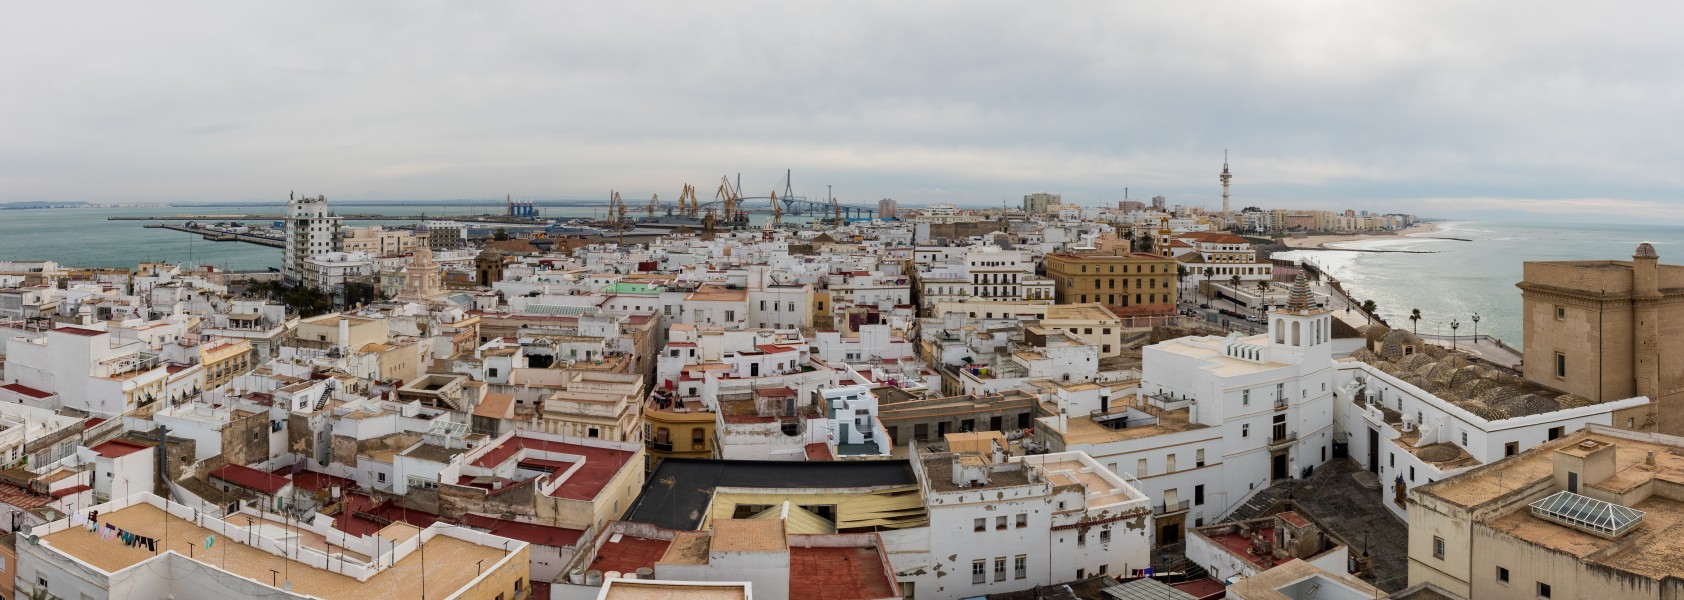 Vista de Cádiz, España, 2015-12-08, DD 75-76 PAN